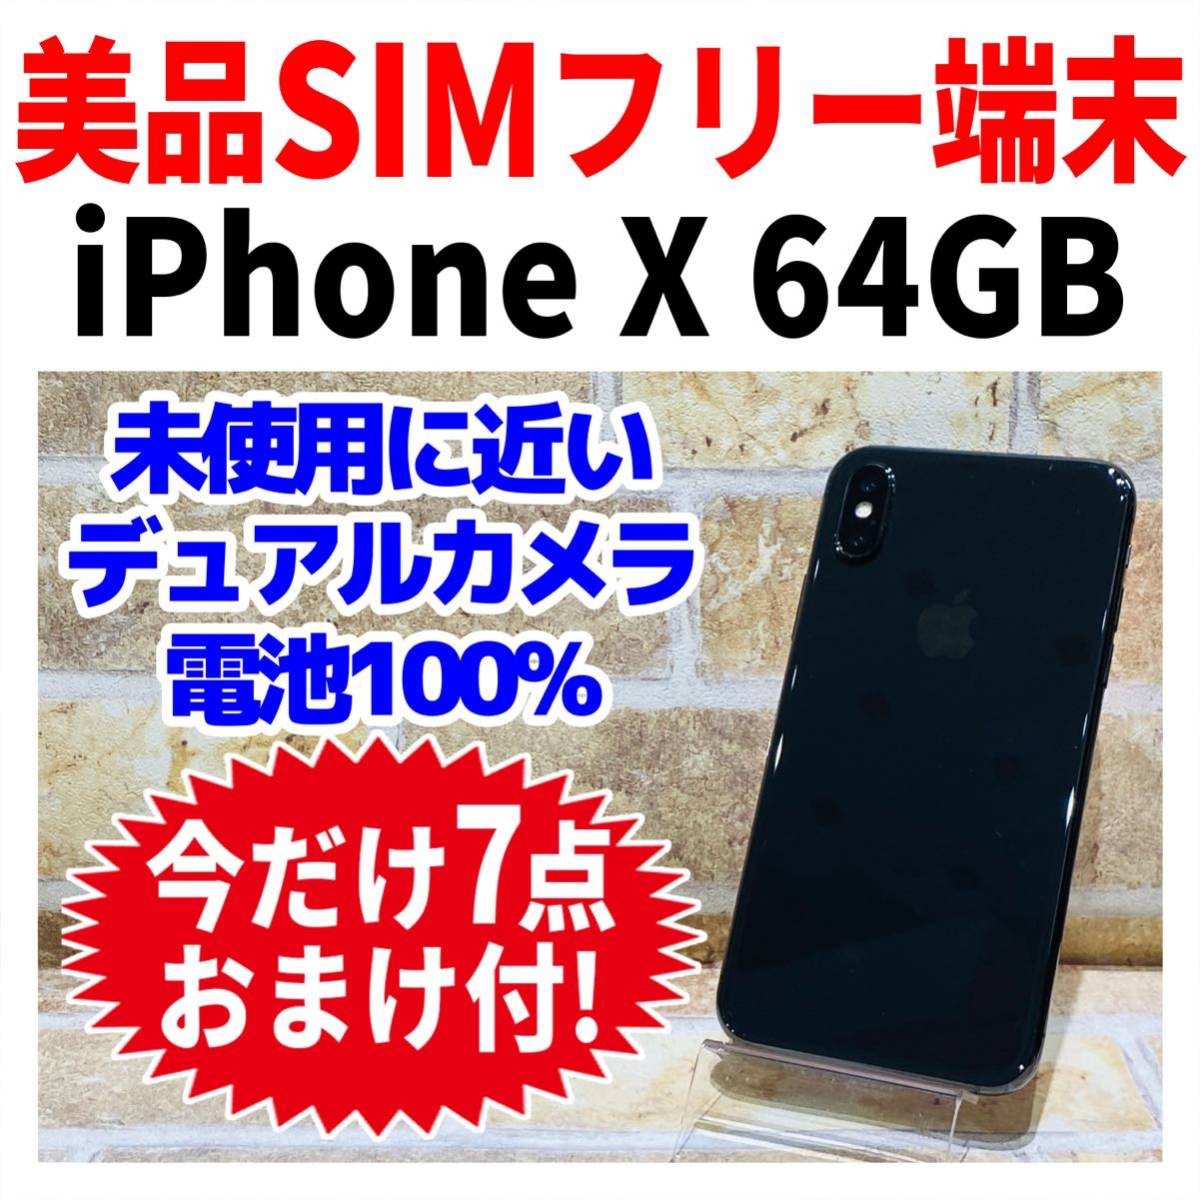 爆買いセール 美品 SIMフリー iPhoneX 64GB スペースグレイ 新品